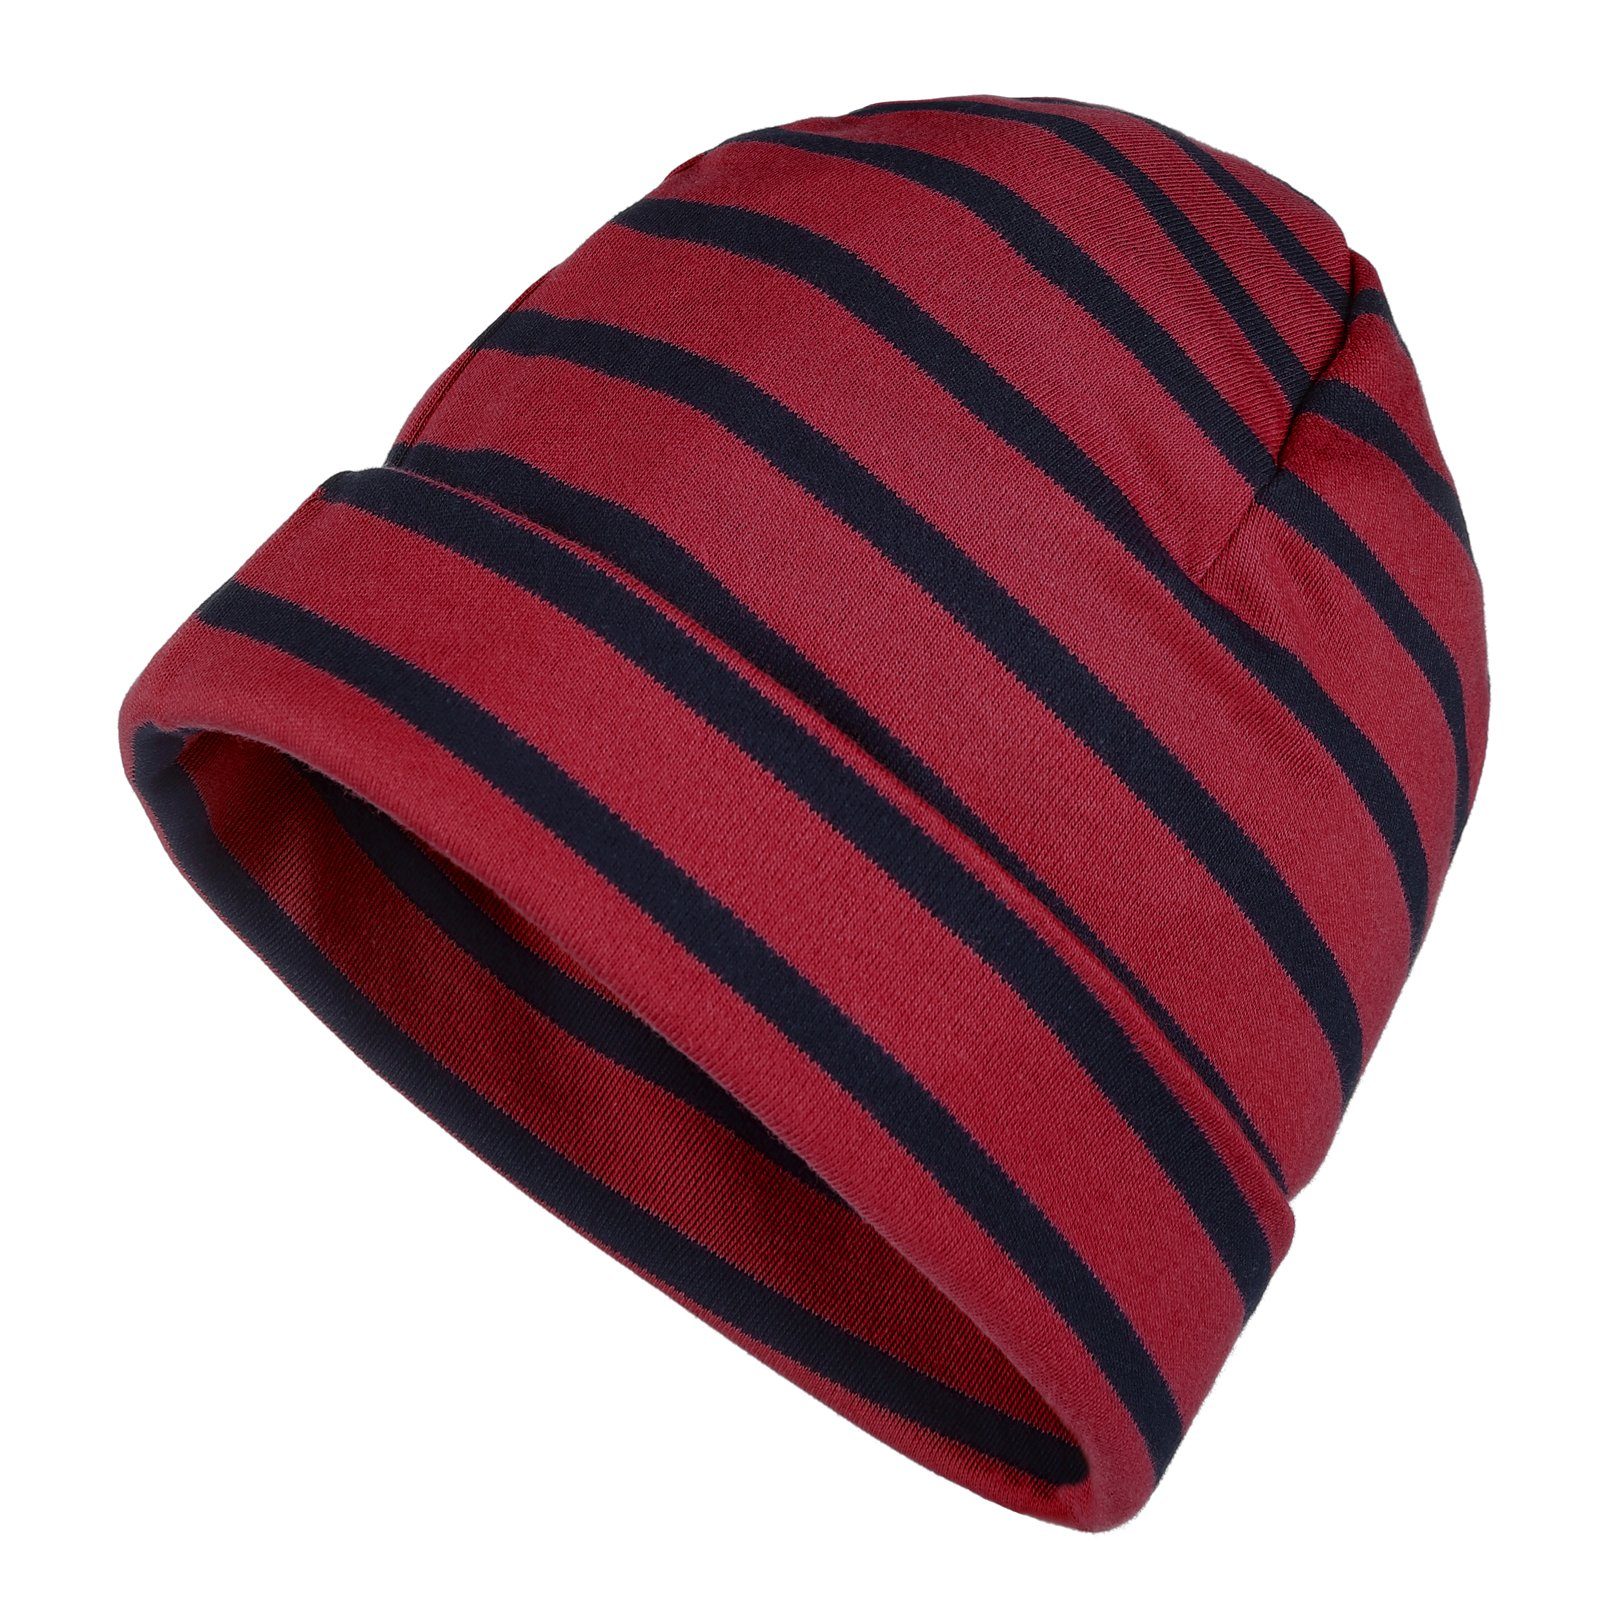 Unisex / blau Streifen & Erwachsene Mütze - für Ringelmütze Strickmütze Baumwolle Kinder (31) modAS rot